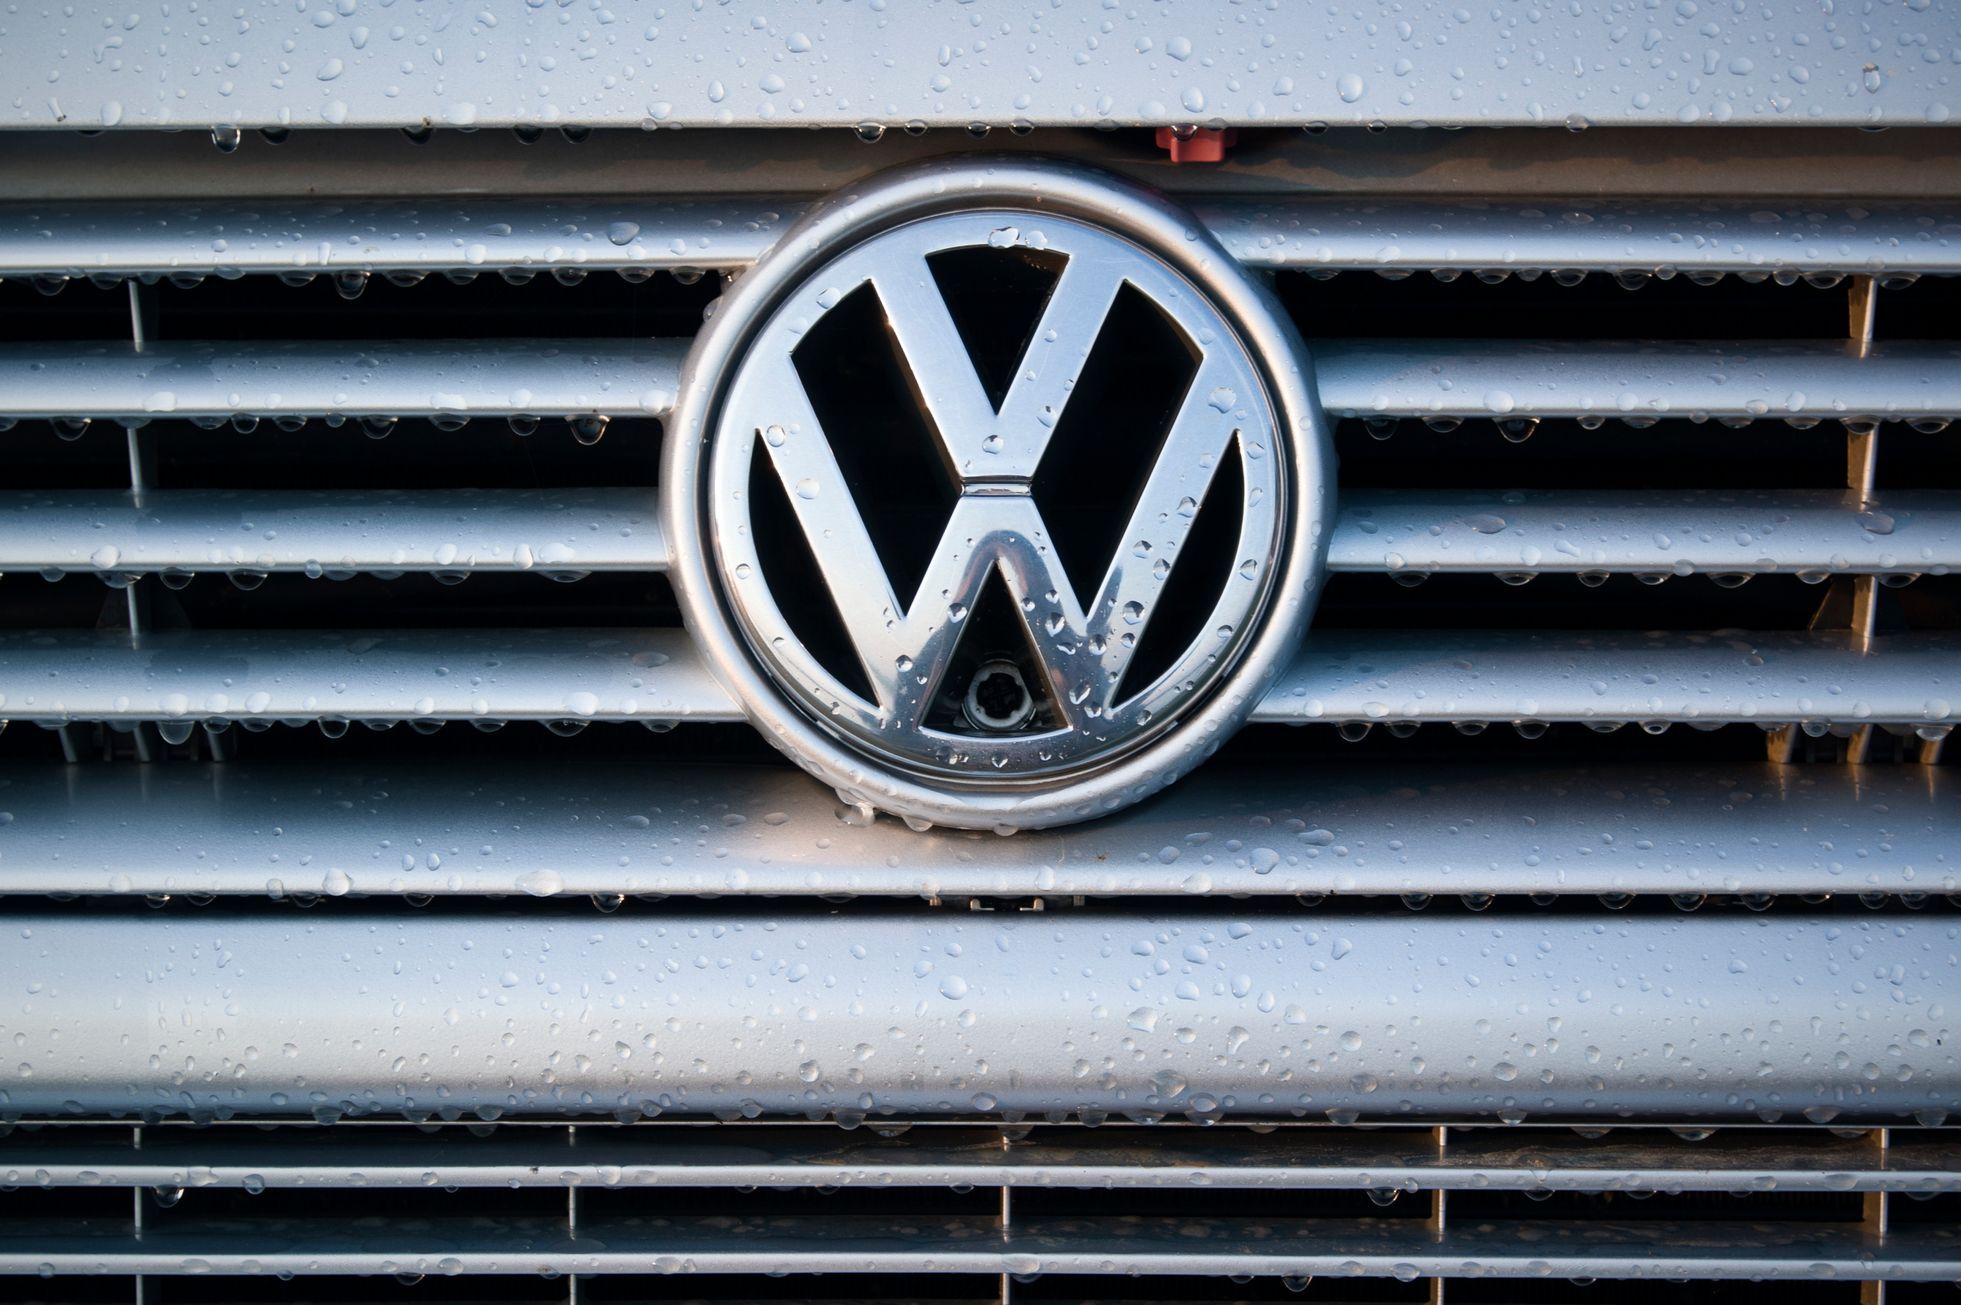 Americká prokuratura žádá sedm let vězení pro manažera Volkswagen kvůli emisní aféře